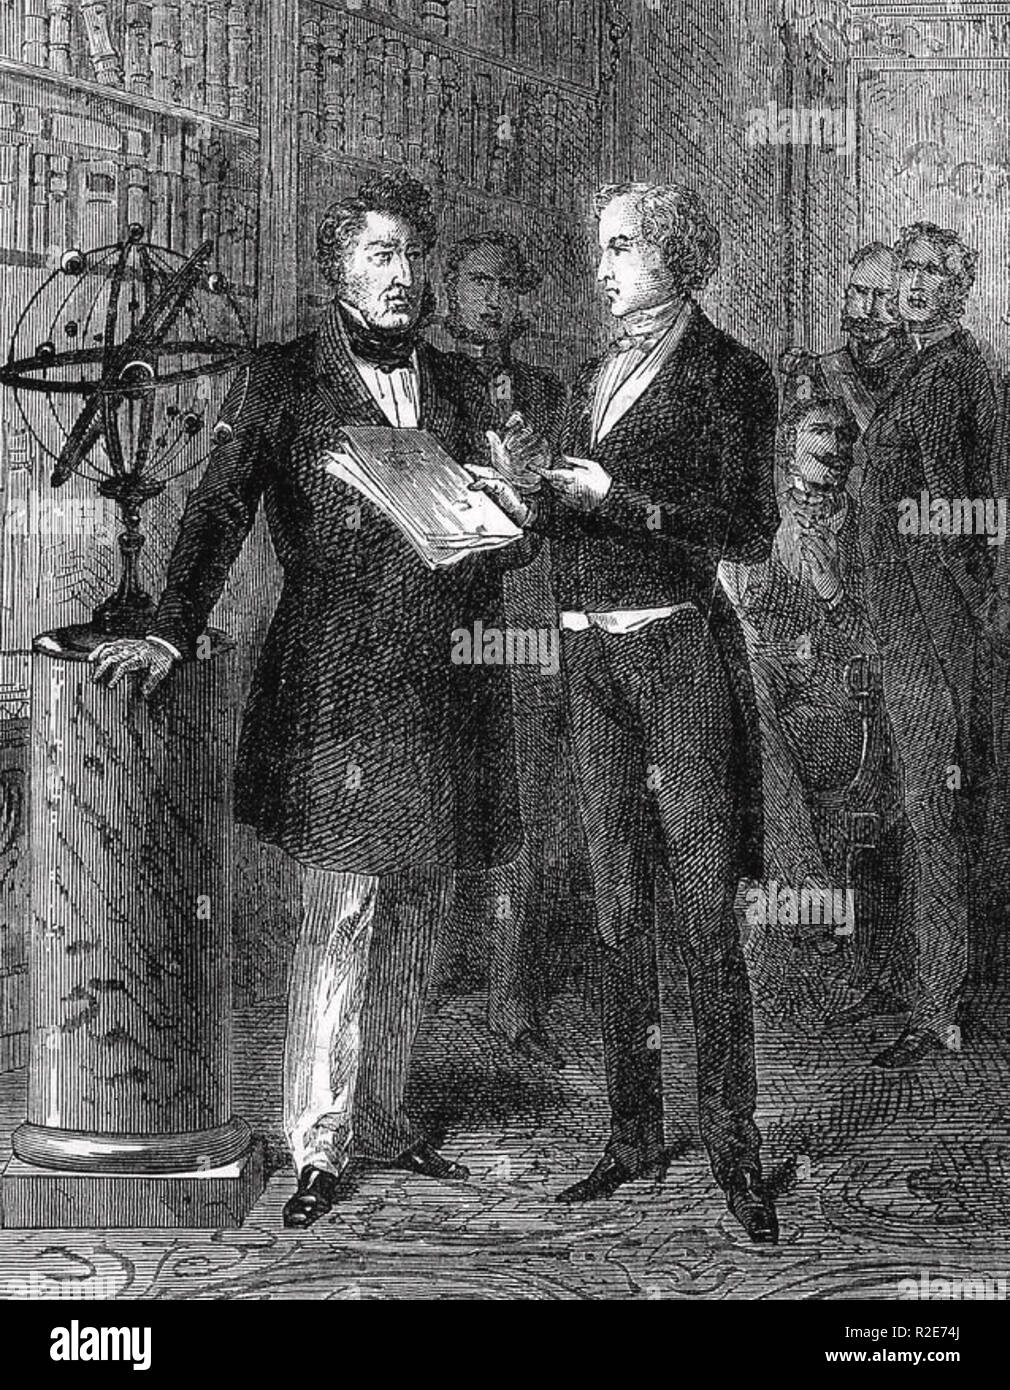 URBAIN le VERRIER (1811-1877) matematico francese spiegando la sua scoperta di Nettuno al re francese Louis Philippe nel 1846 Foto Stock